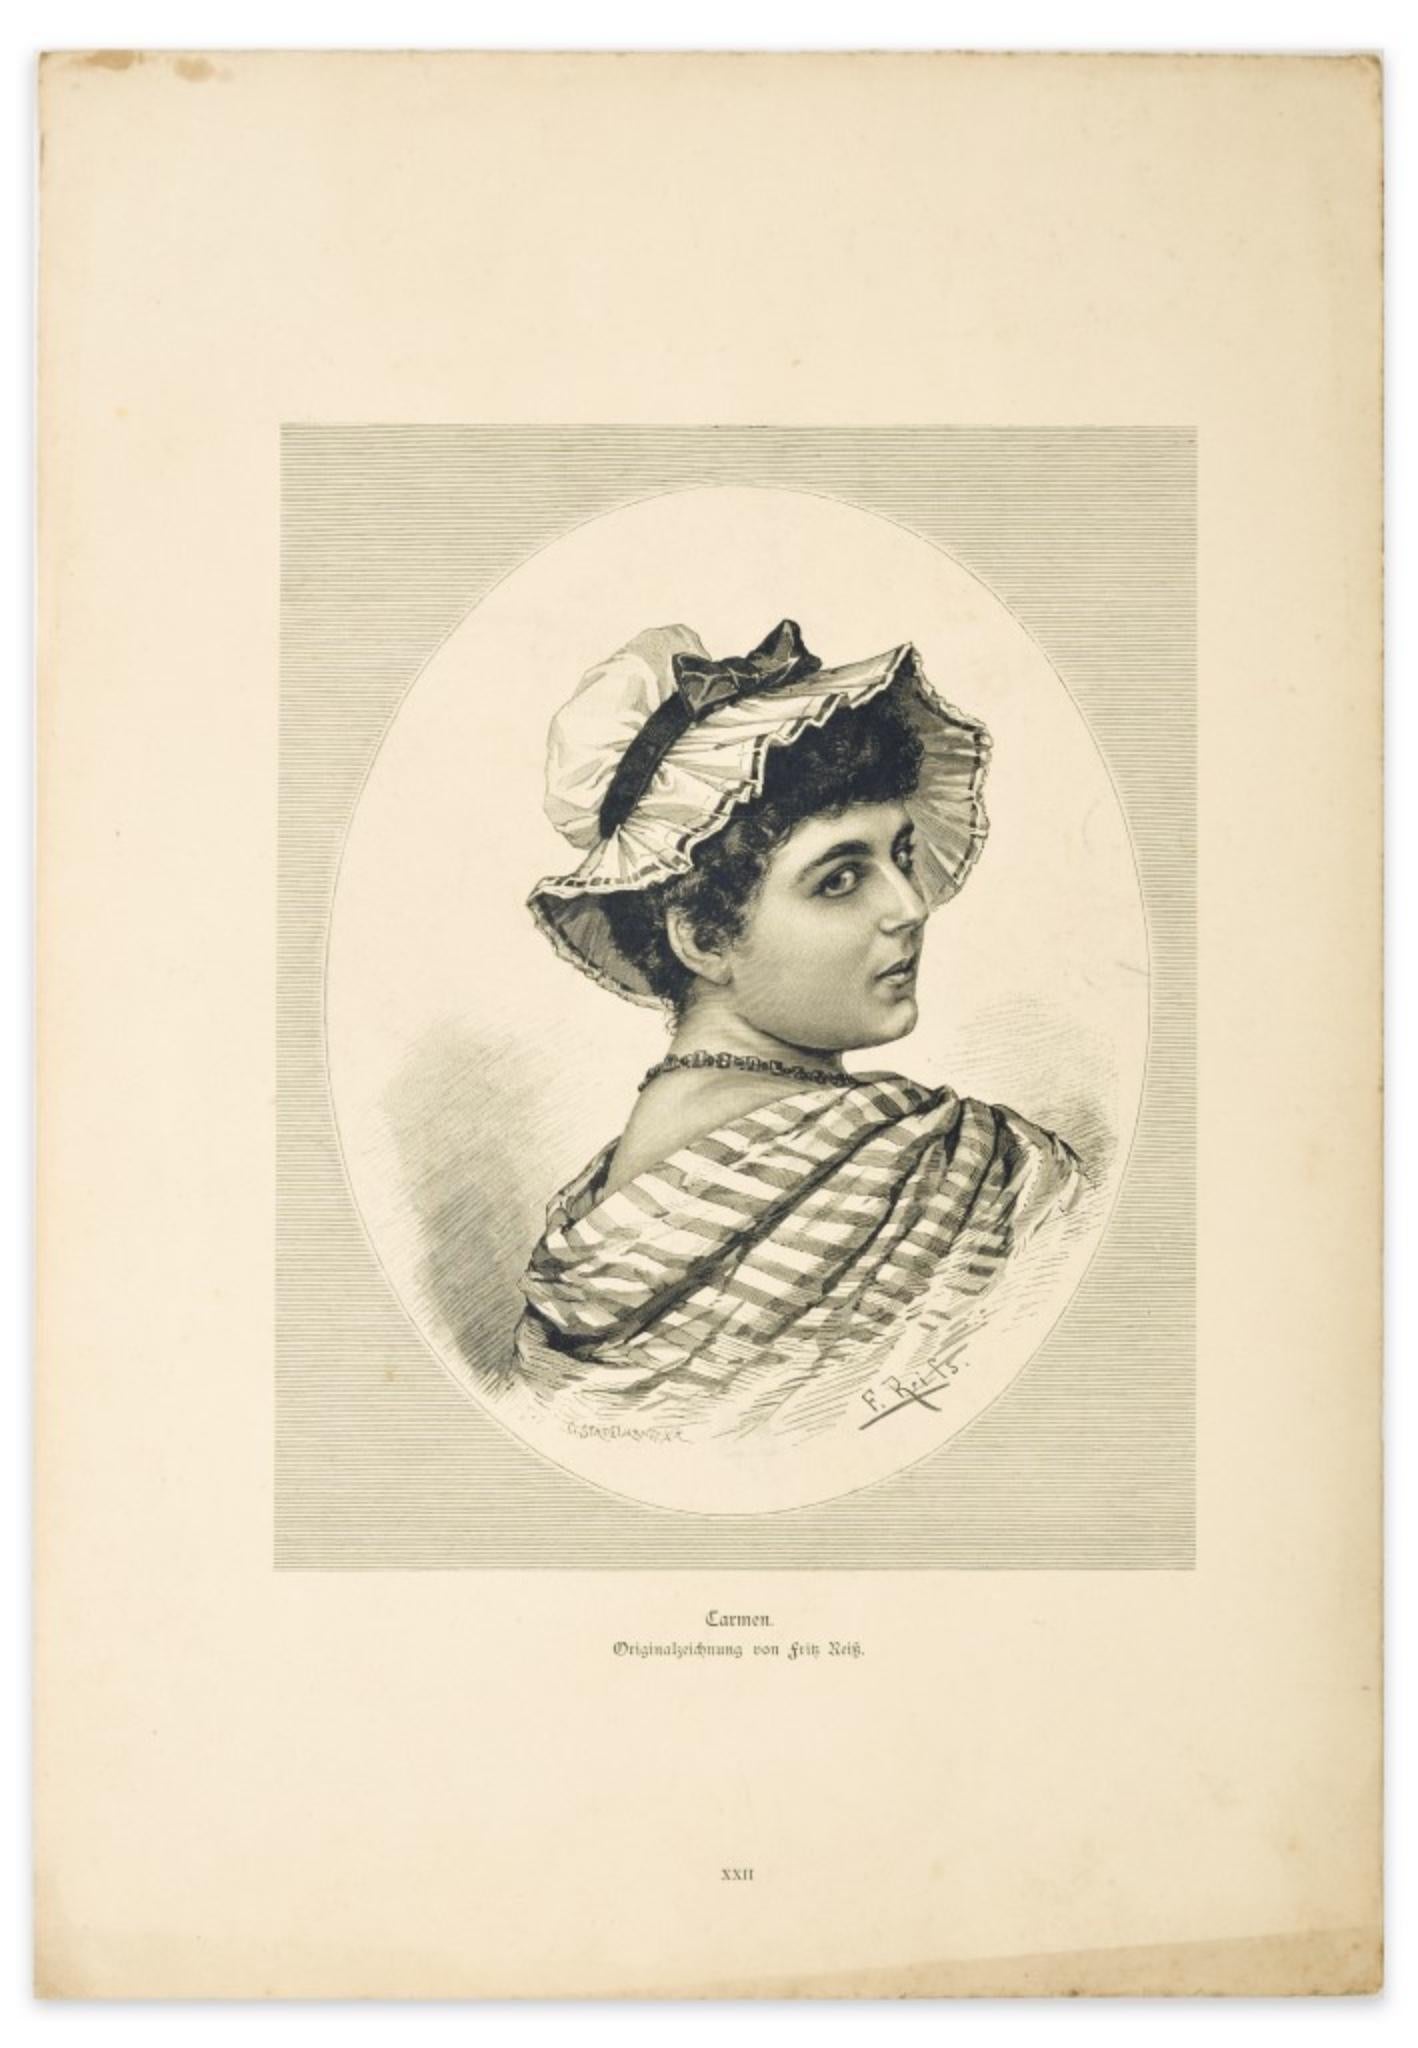 Die Frau ist eine Original-Zinkographie auf Papier von F. Reifs nach G. Stadelmann aus dem Jahr 1905.

Diese besondere Zinkographie stellt das Porträt einer Frau dar. Unten in der Mitte der Titel des Werks "Carmen" und die Beschriftung